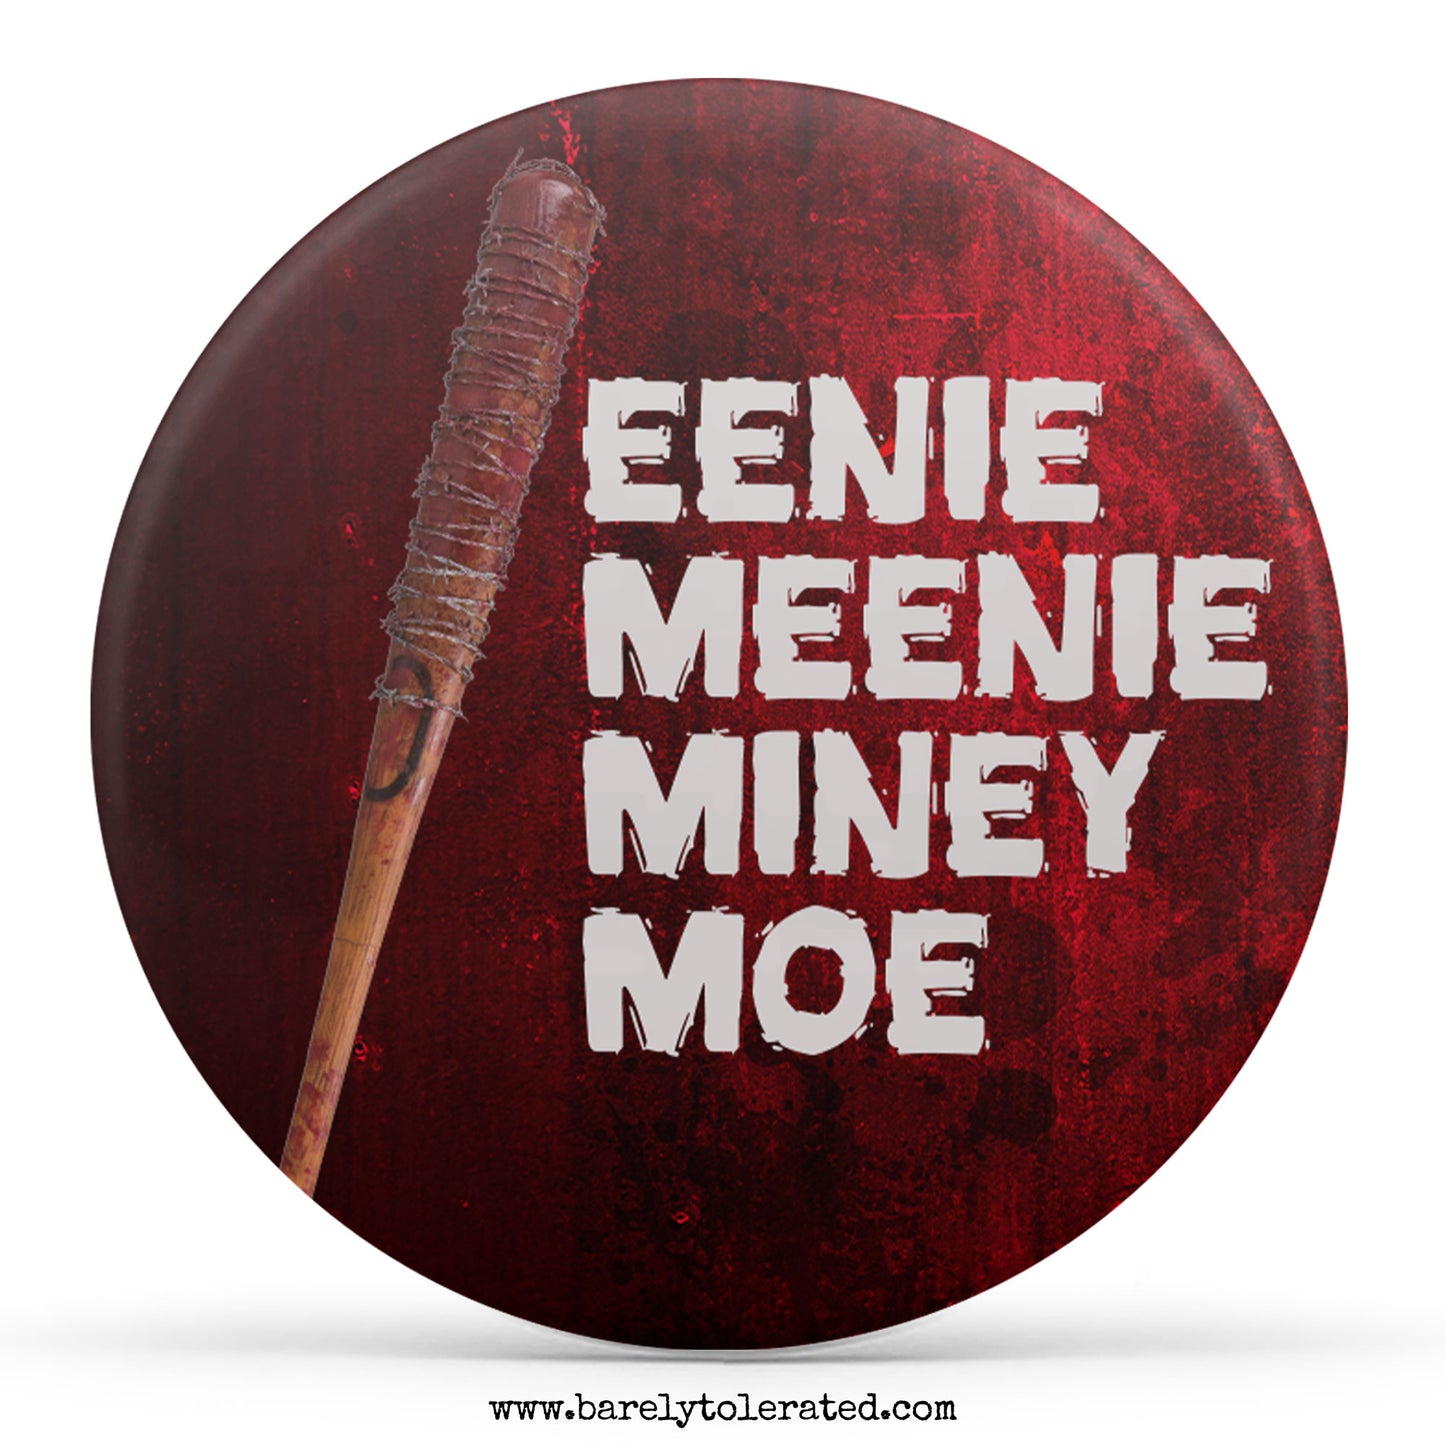 Eenie Meenie Miney Moe